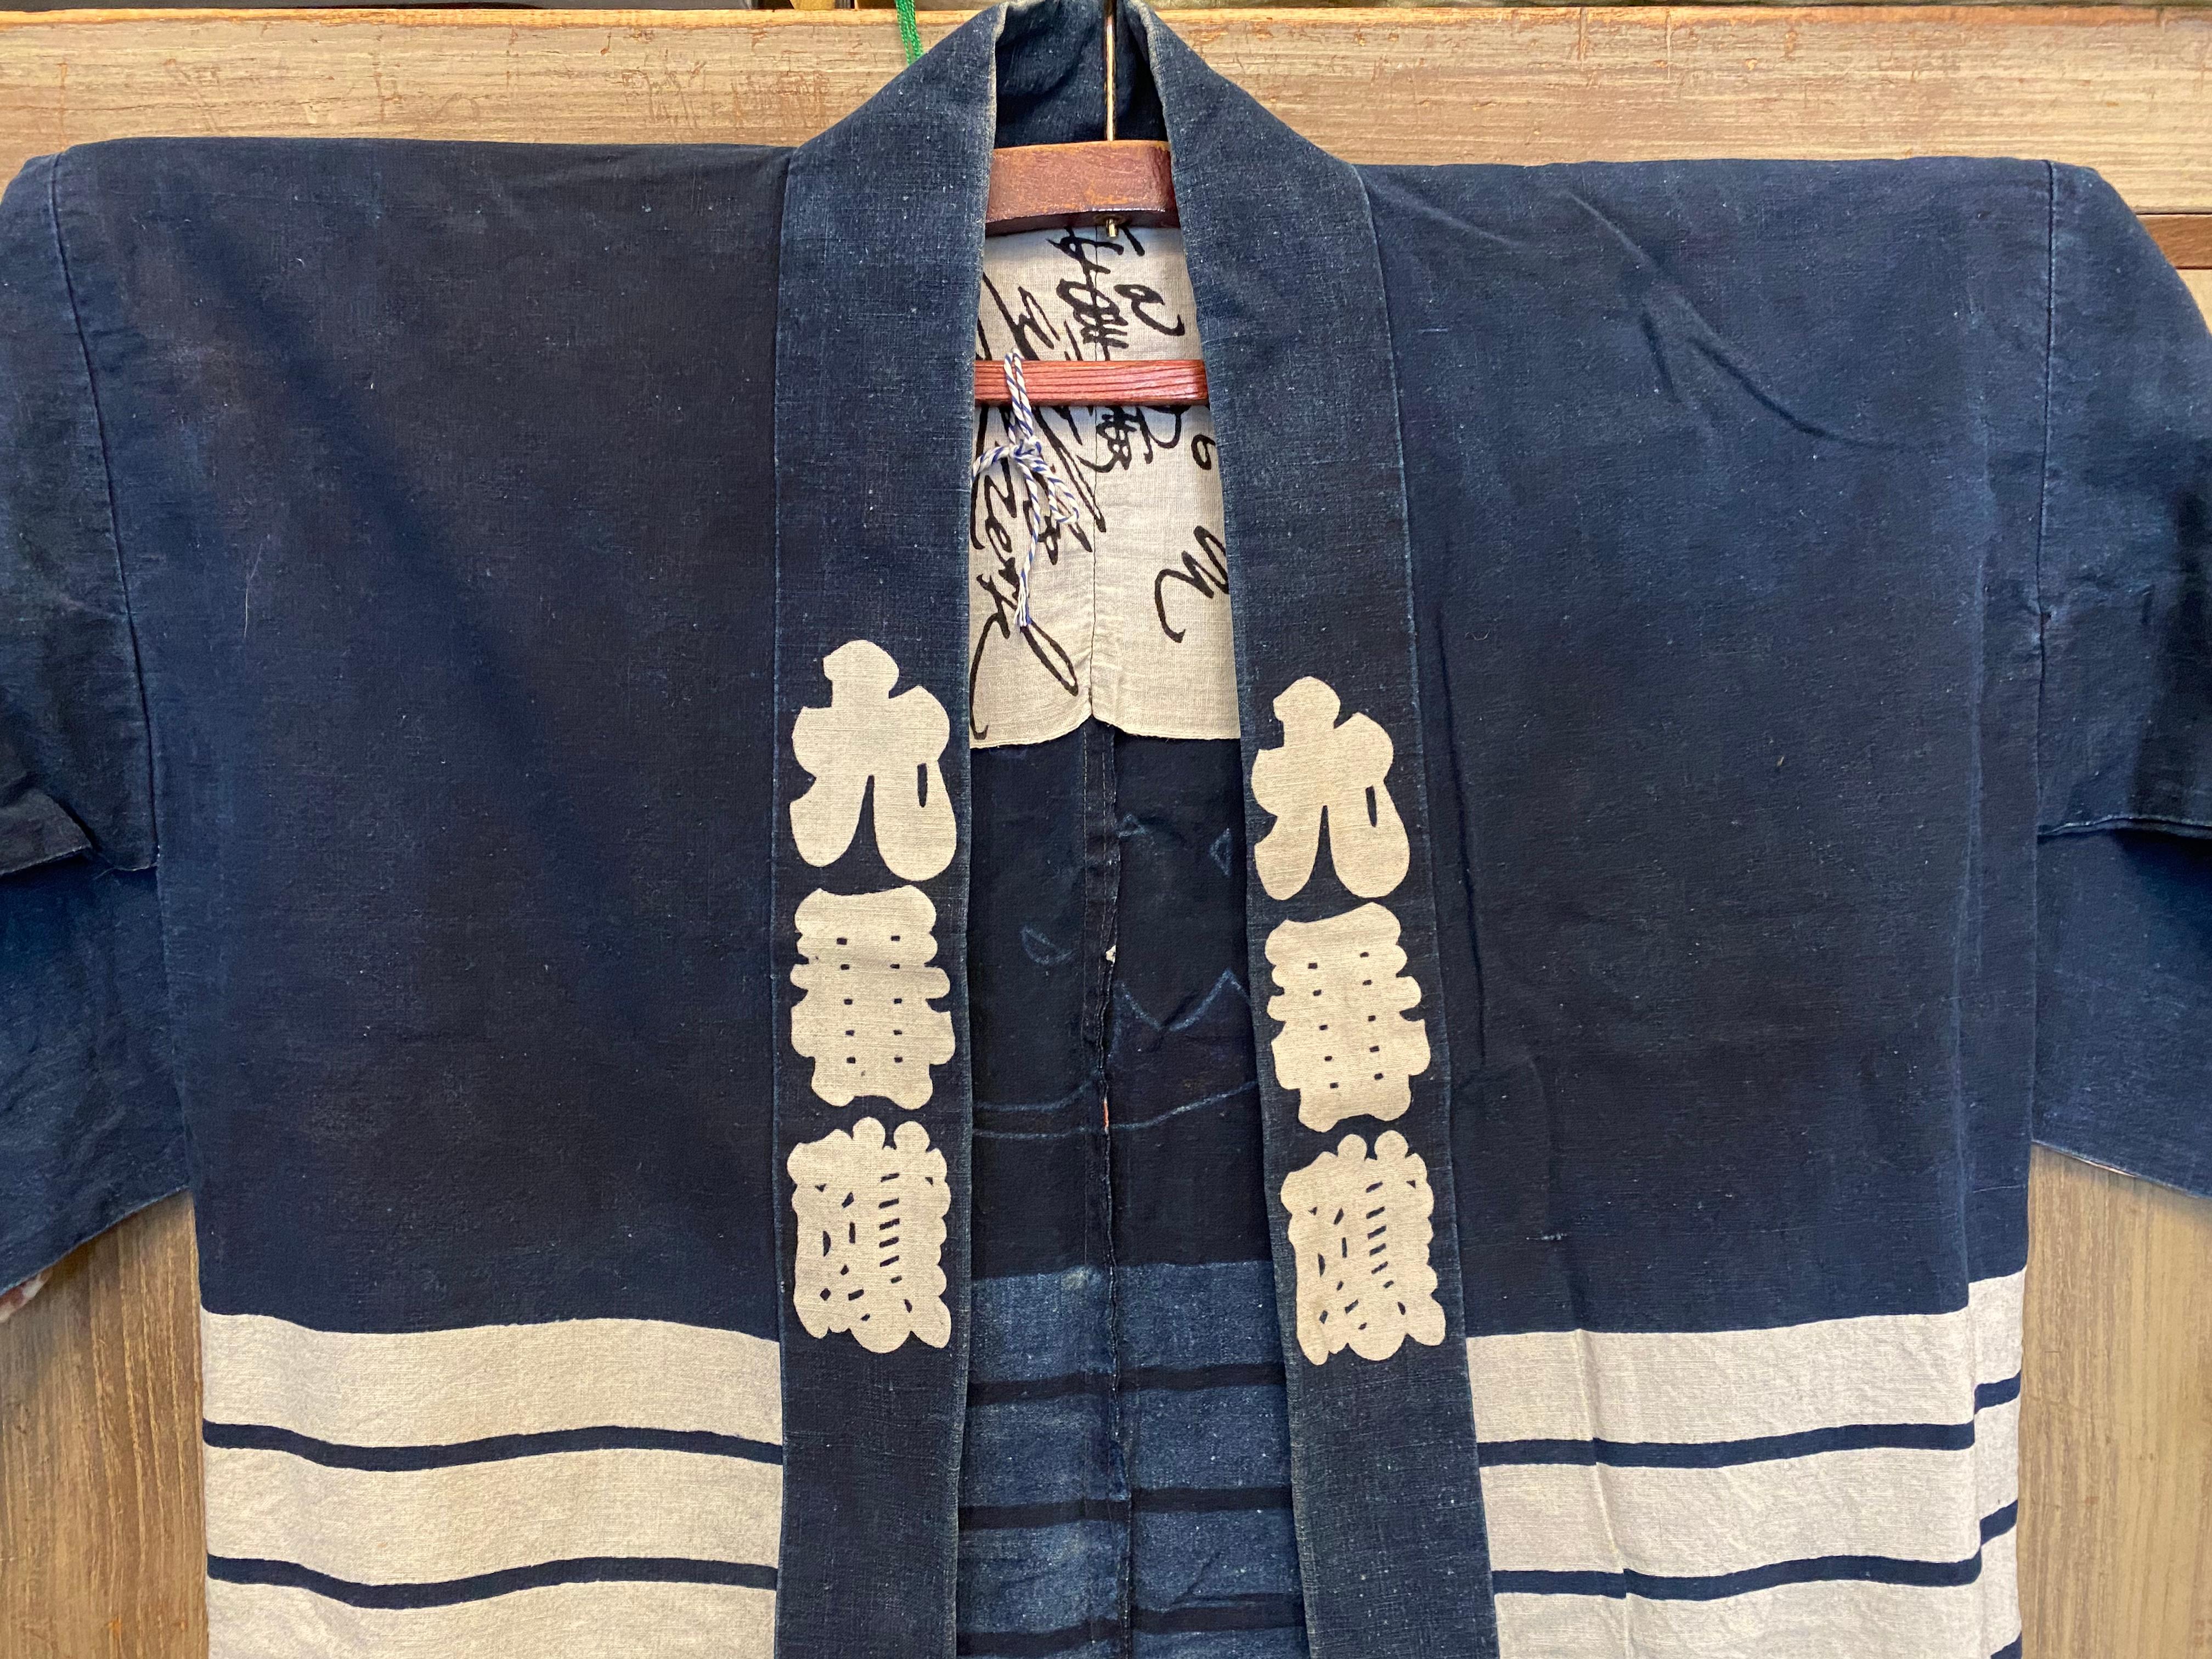 Dies ist eine Jacke mit Baumwolle, die in Japan hergestellt wurde.
Diese Art von Jacken werden auf Japanisch Hanten genannt. 
Hanten ist eine kurze Jacke, die einem Haori ähnelt, aber keinen Zwickel hat. Sie wird ohne Brustgurt und ohne